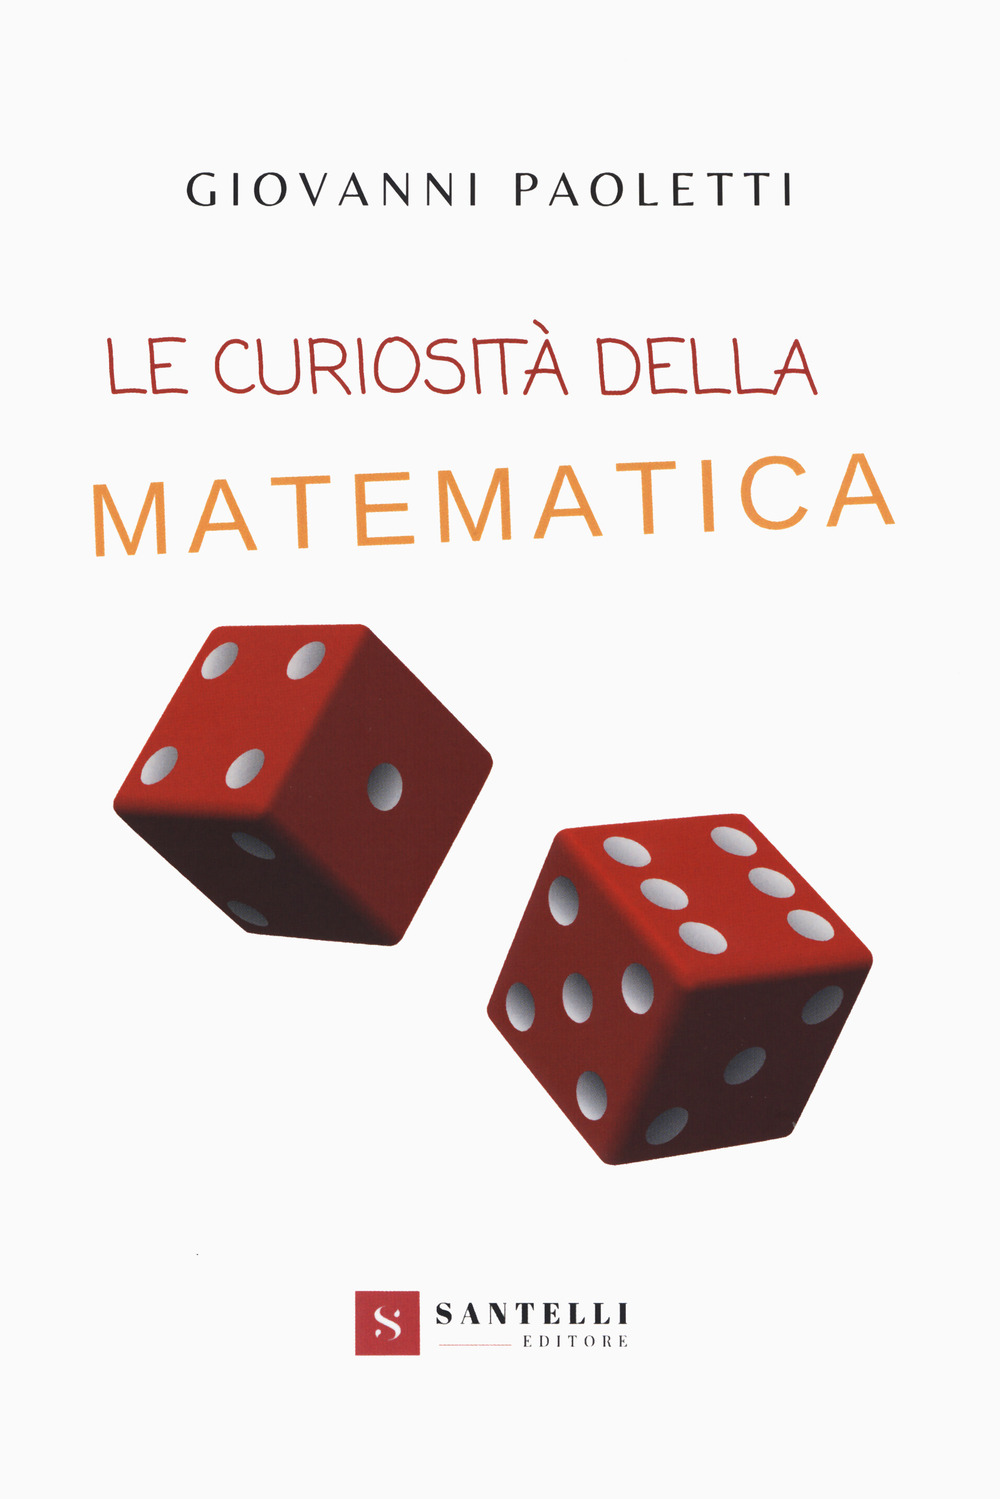 Libri Giovanni Paoletti - Le Curiosita Della Matematica NUOVO SIGILLATO, EDIZIONE DEL 13/02/2020 SUBITO DISPONIBILE